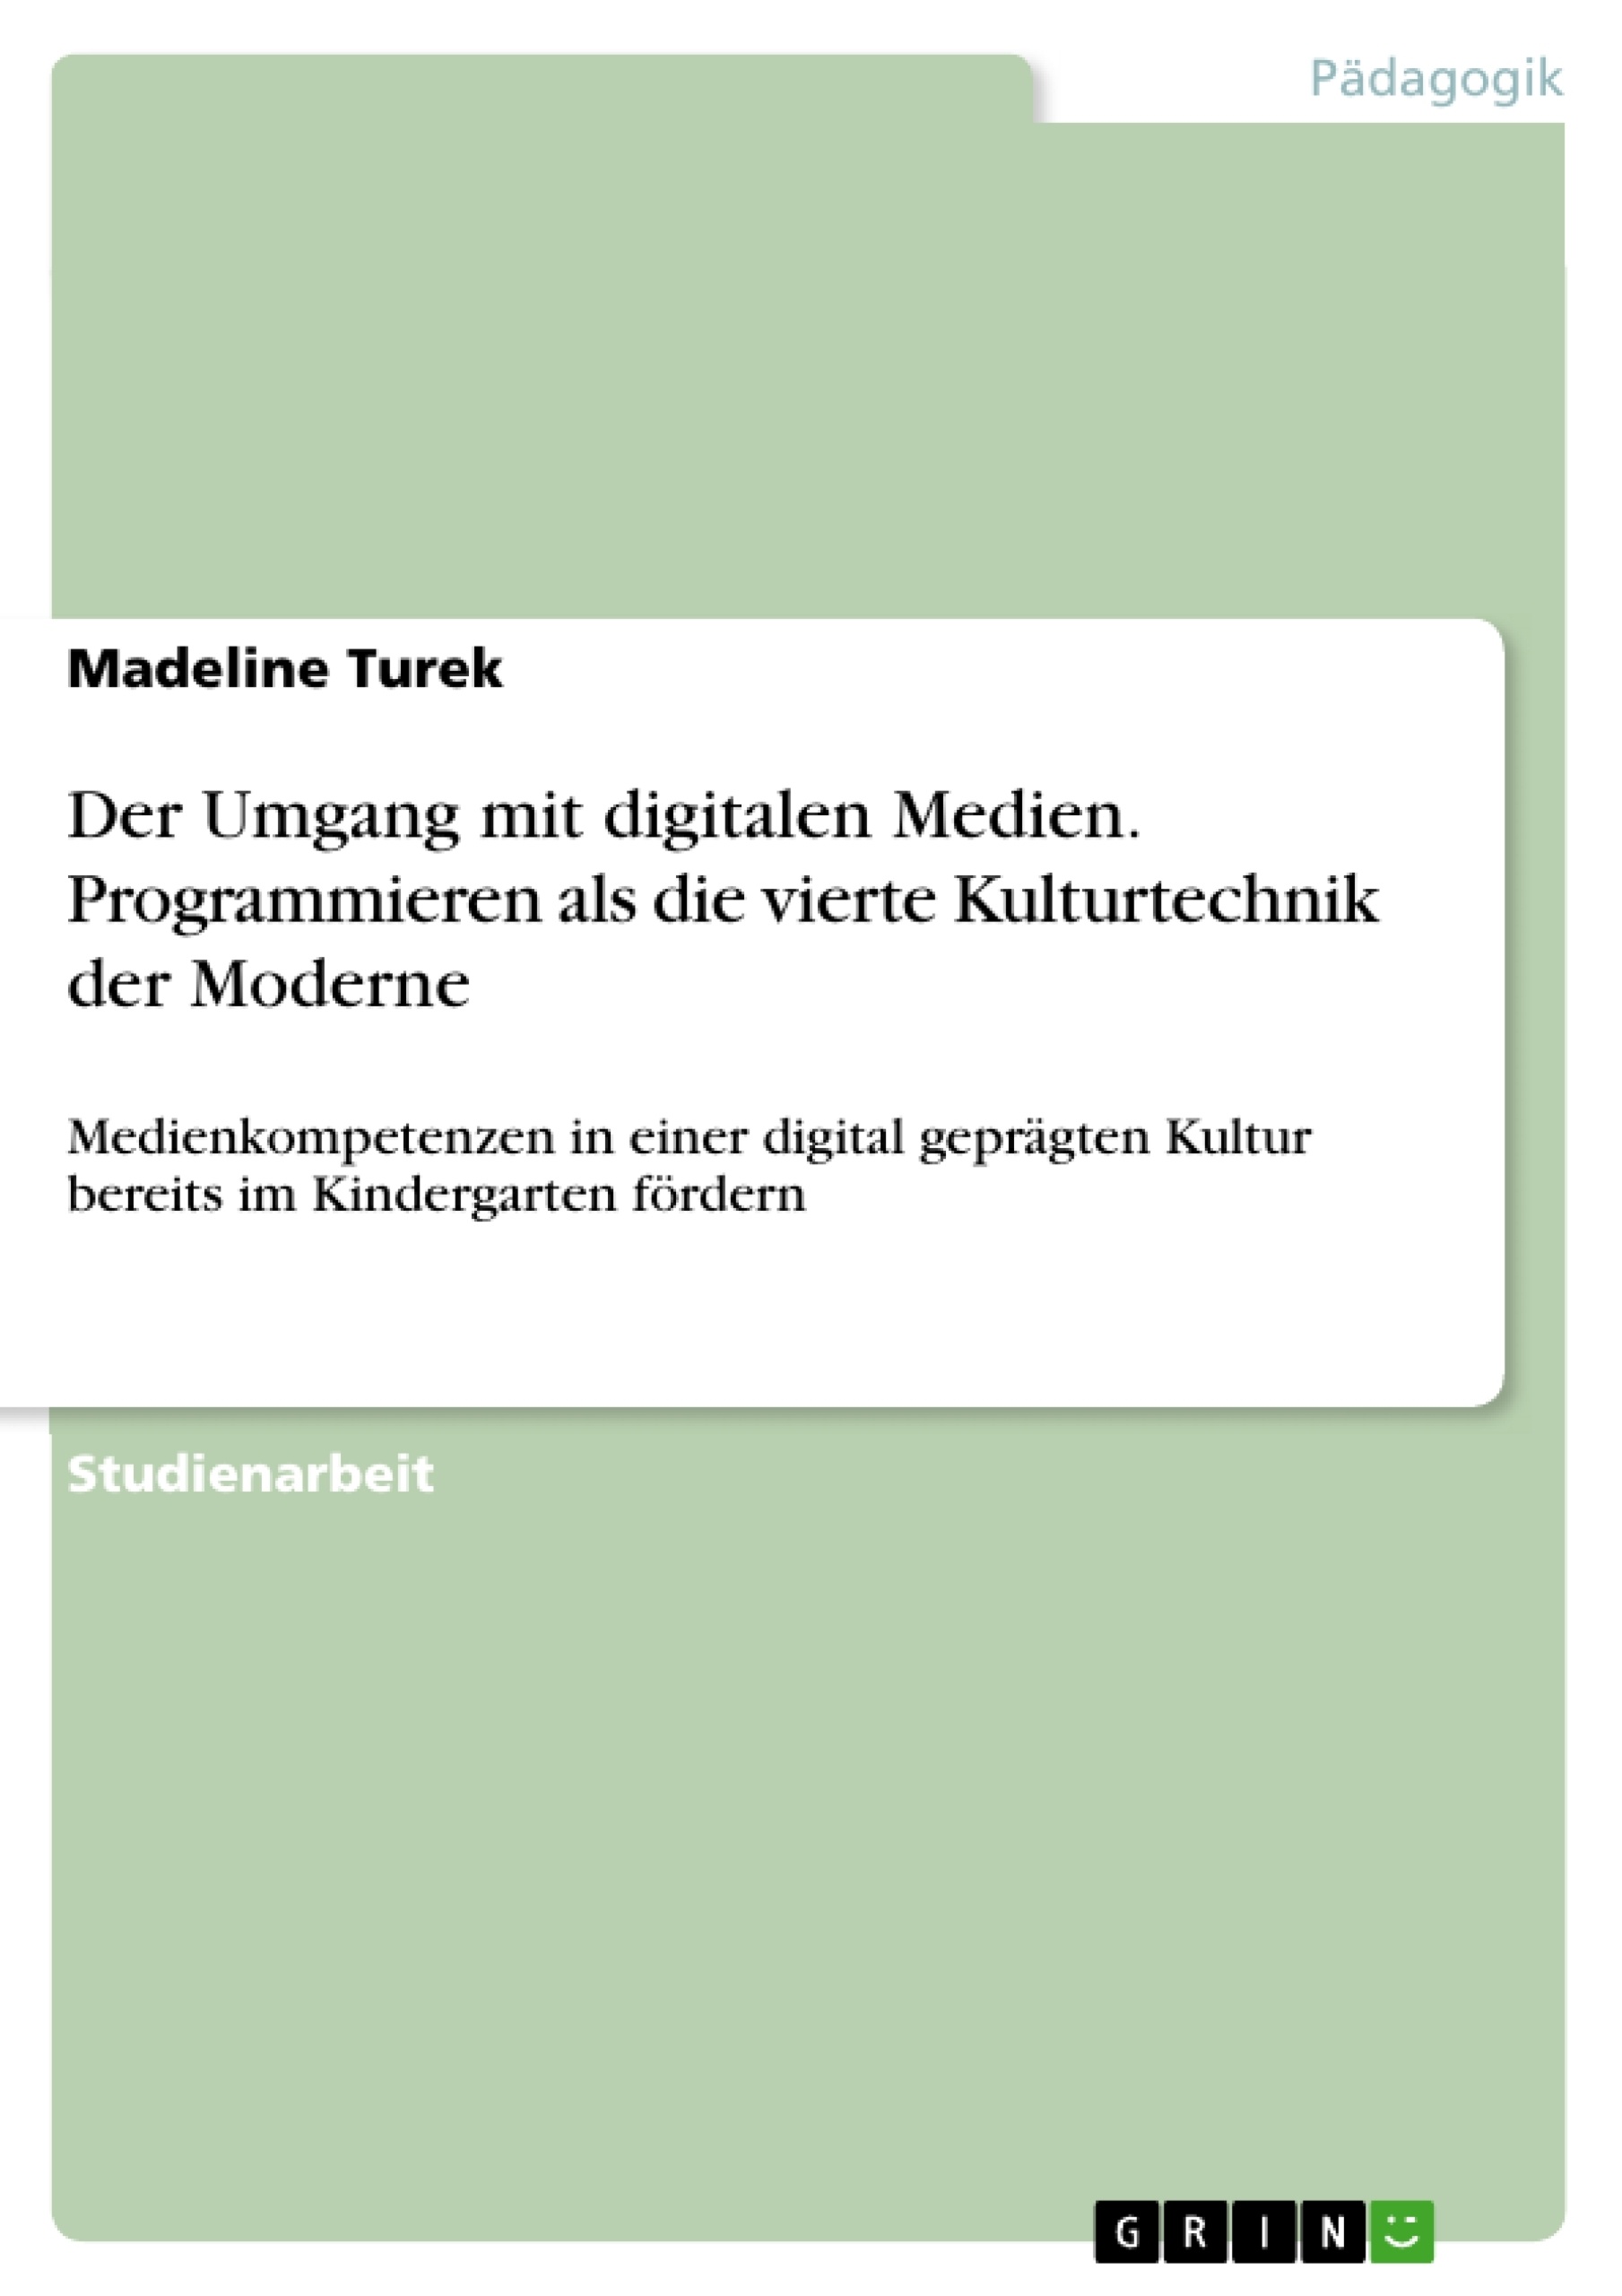 Título: Der Umgang mit digitalen Medien. Programmieren als die vierte Kulturtechnik der Moderne